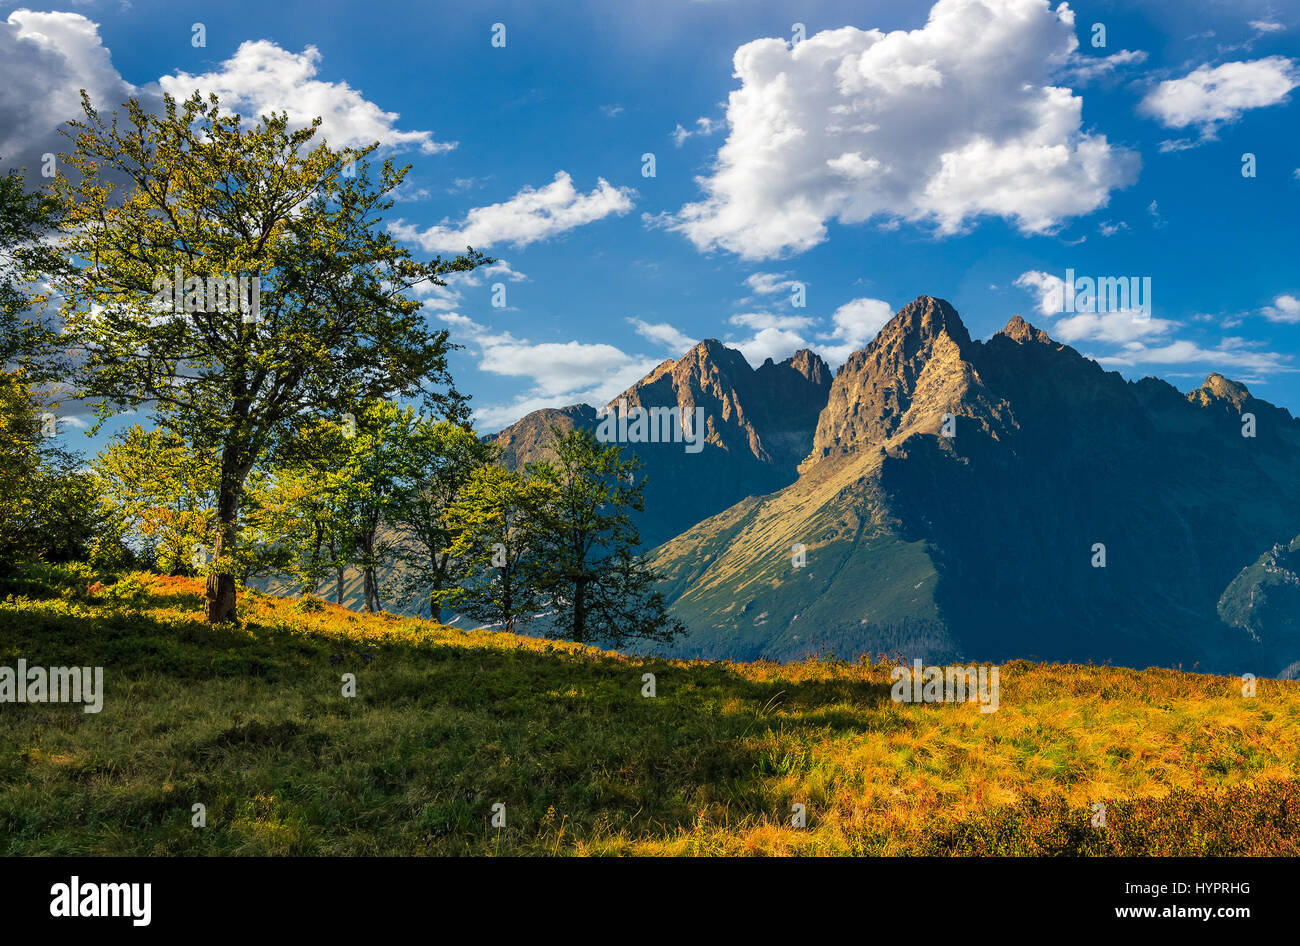 Zusammengesetztes Bild mit Bäumen auf einem grasbewachsenen Hügel in High Tatry Bergrücken. schönen Sommerlandschaft an einem sonnigen Tag. Schönem Wetter mit blauem Himmel und c Stockfoto